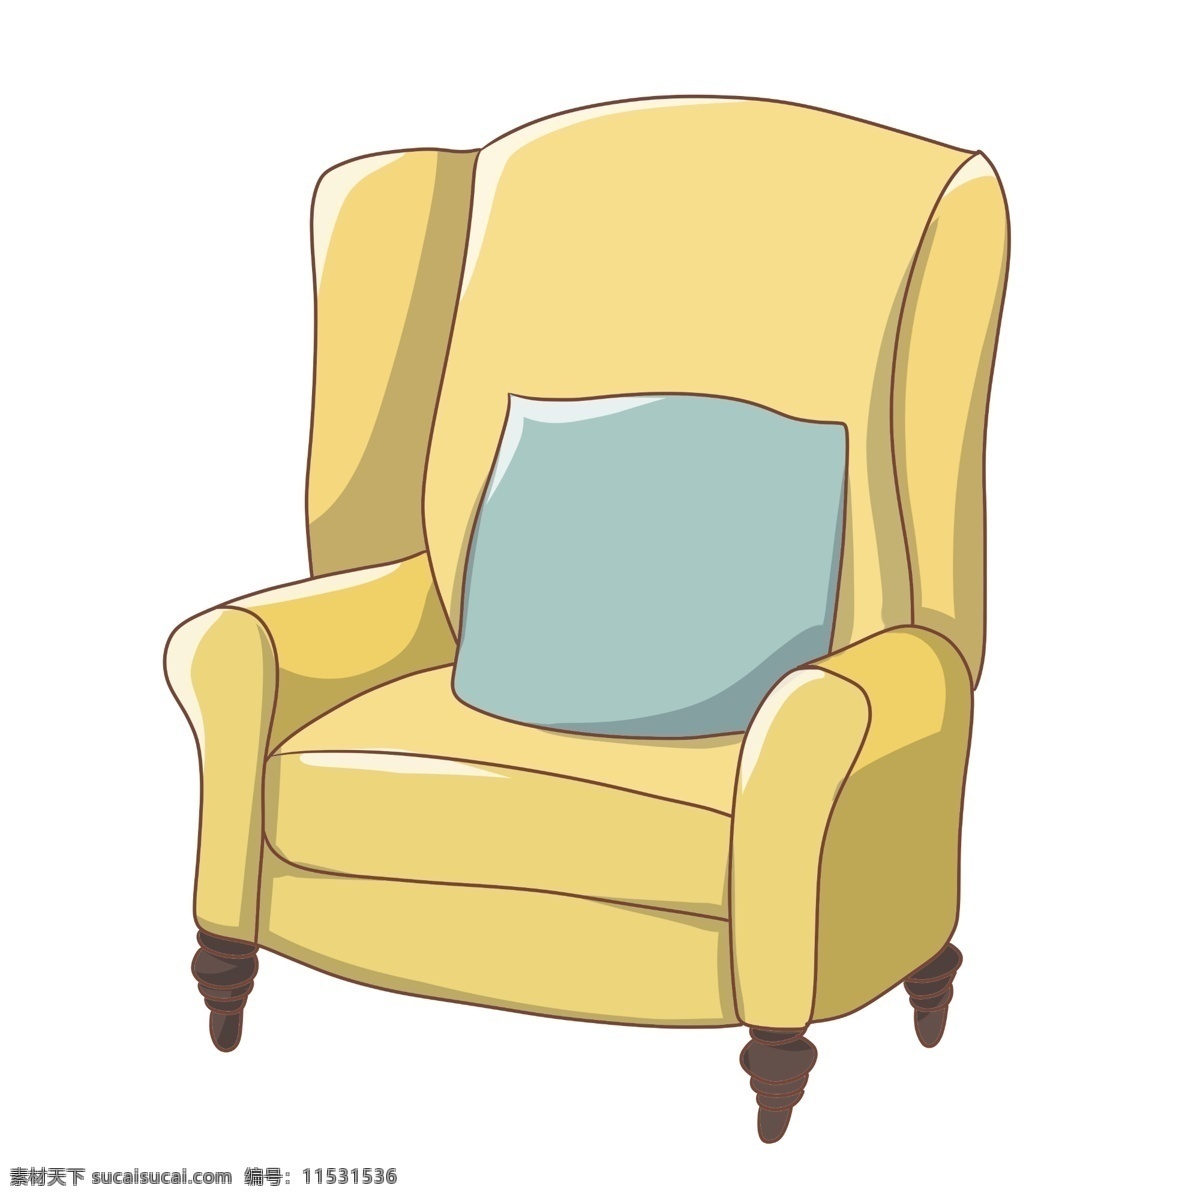 黄色 沙发 手绘 插画 黄色的沙发 卡通的沙发 手绘沙发 沙发装饰 沙发插画 漂亮的沙发 蓝色的垫子